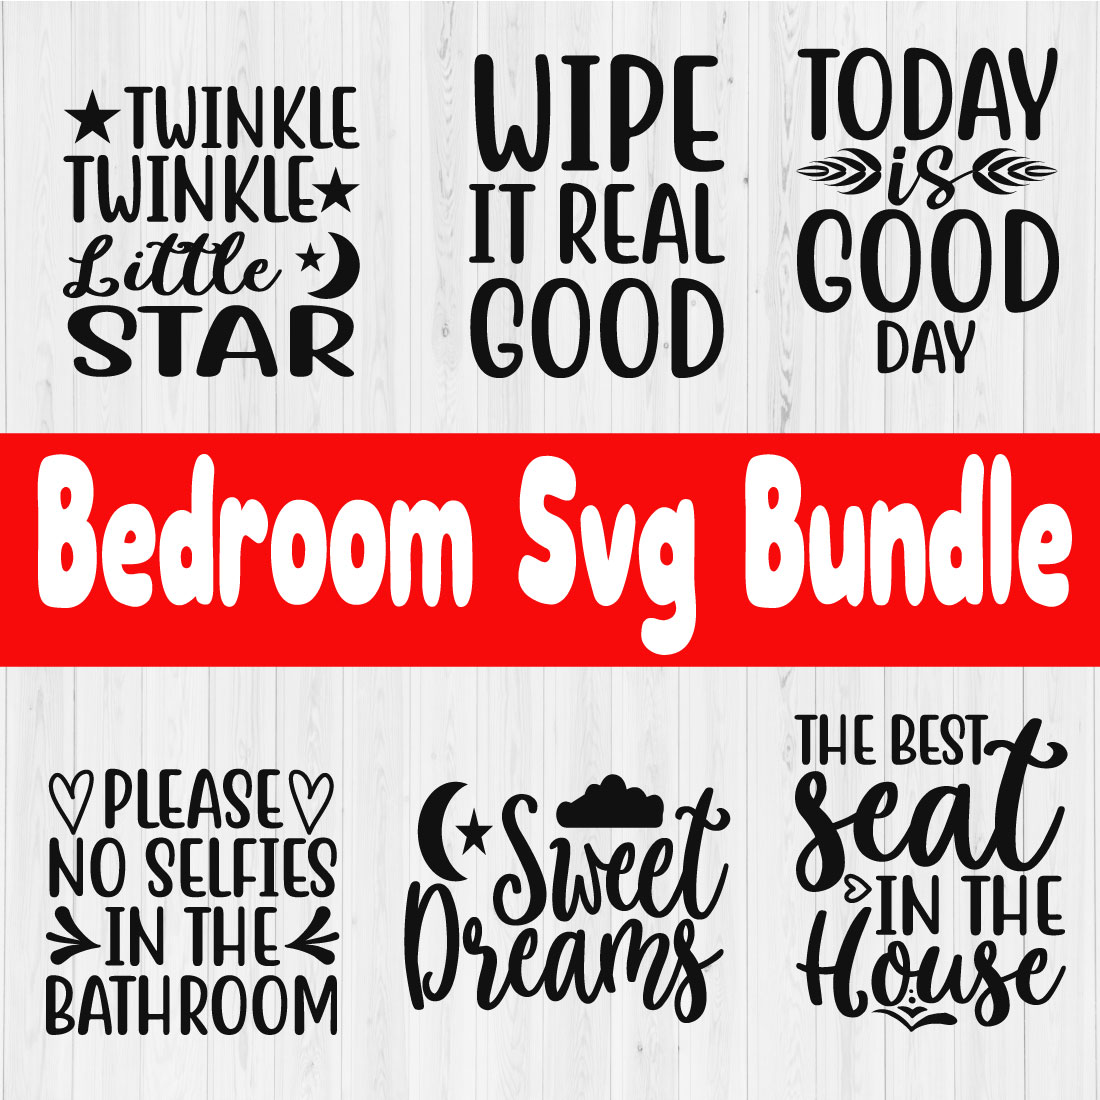 Bedroom Svg Bundle vol8 cover image.